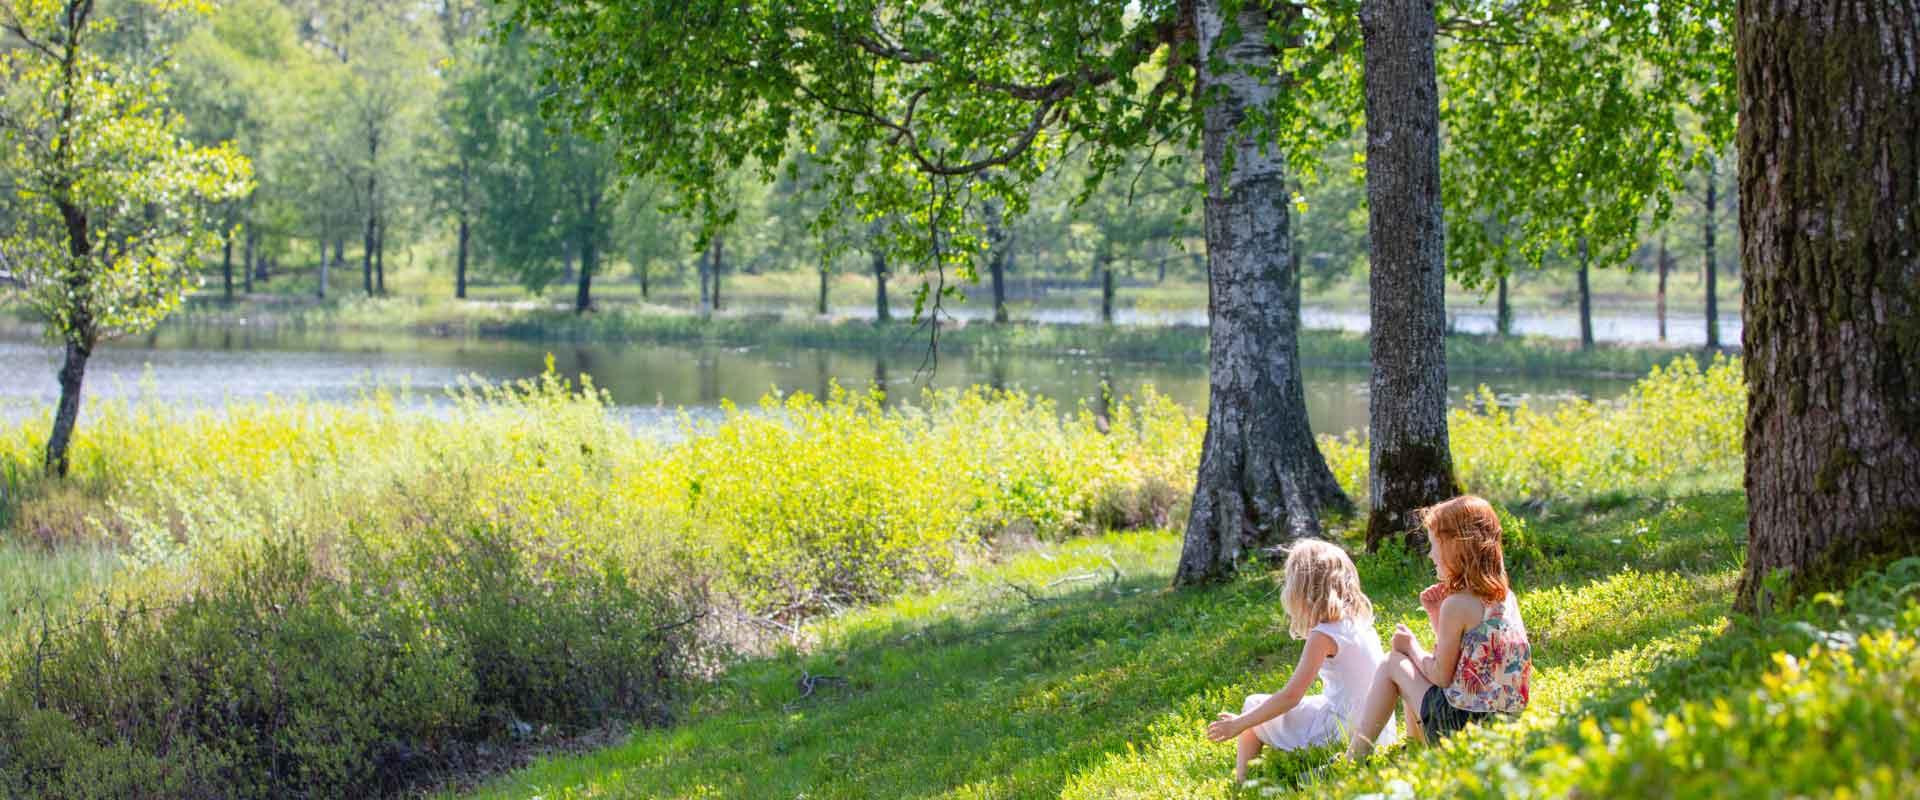 Kinder sitzen im Gras am See in Schweden